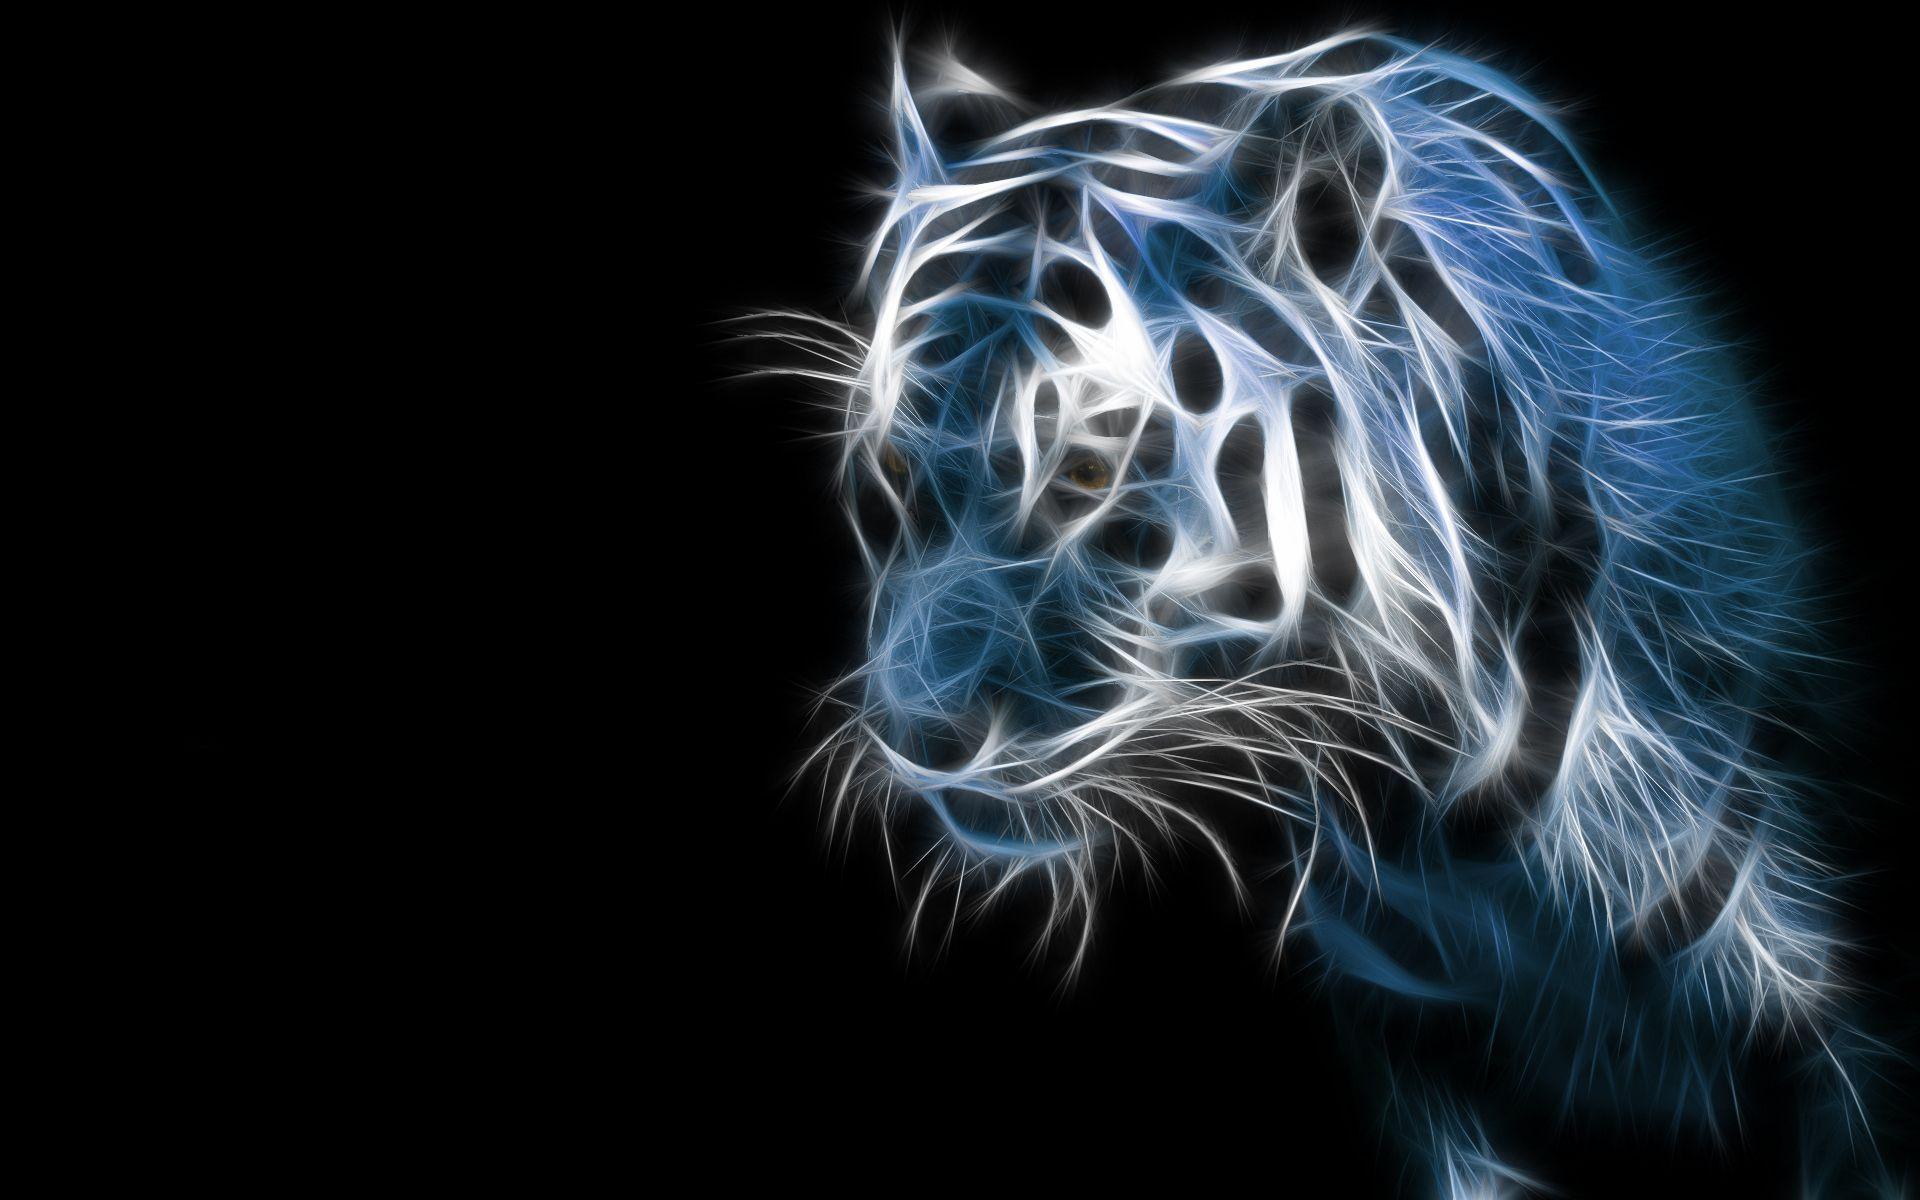 Download 3D HD Staring Tiger Wallpaper | Wallpapers.com